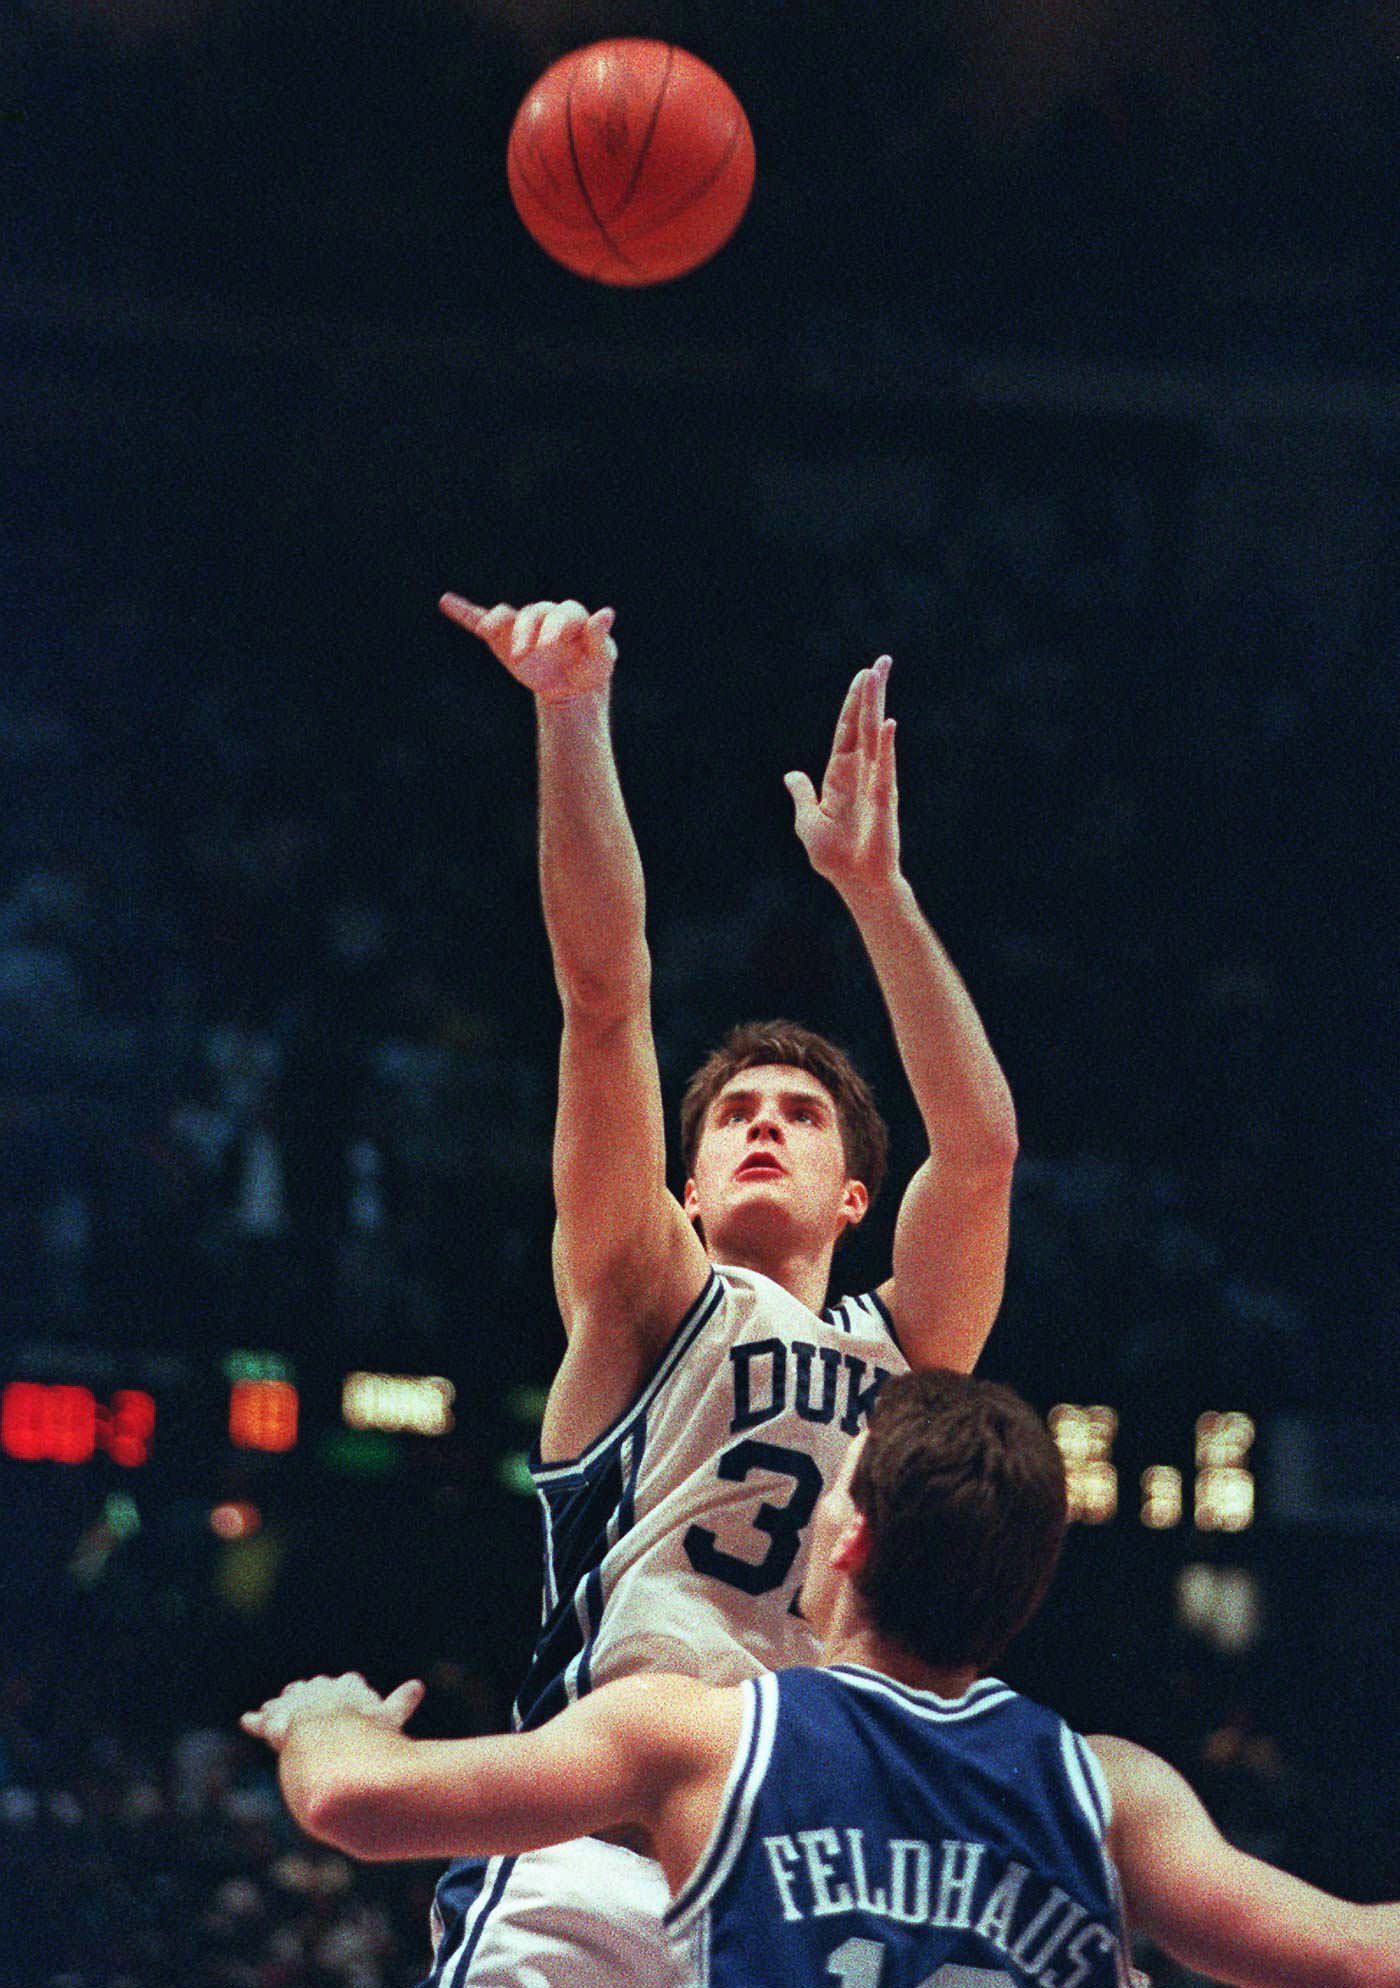 Duke's Christian Laettner shoots the game-winning basket in overtime over Kentucky's Deron Feldhaus